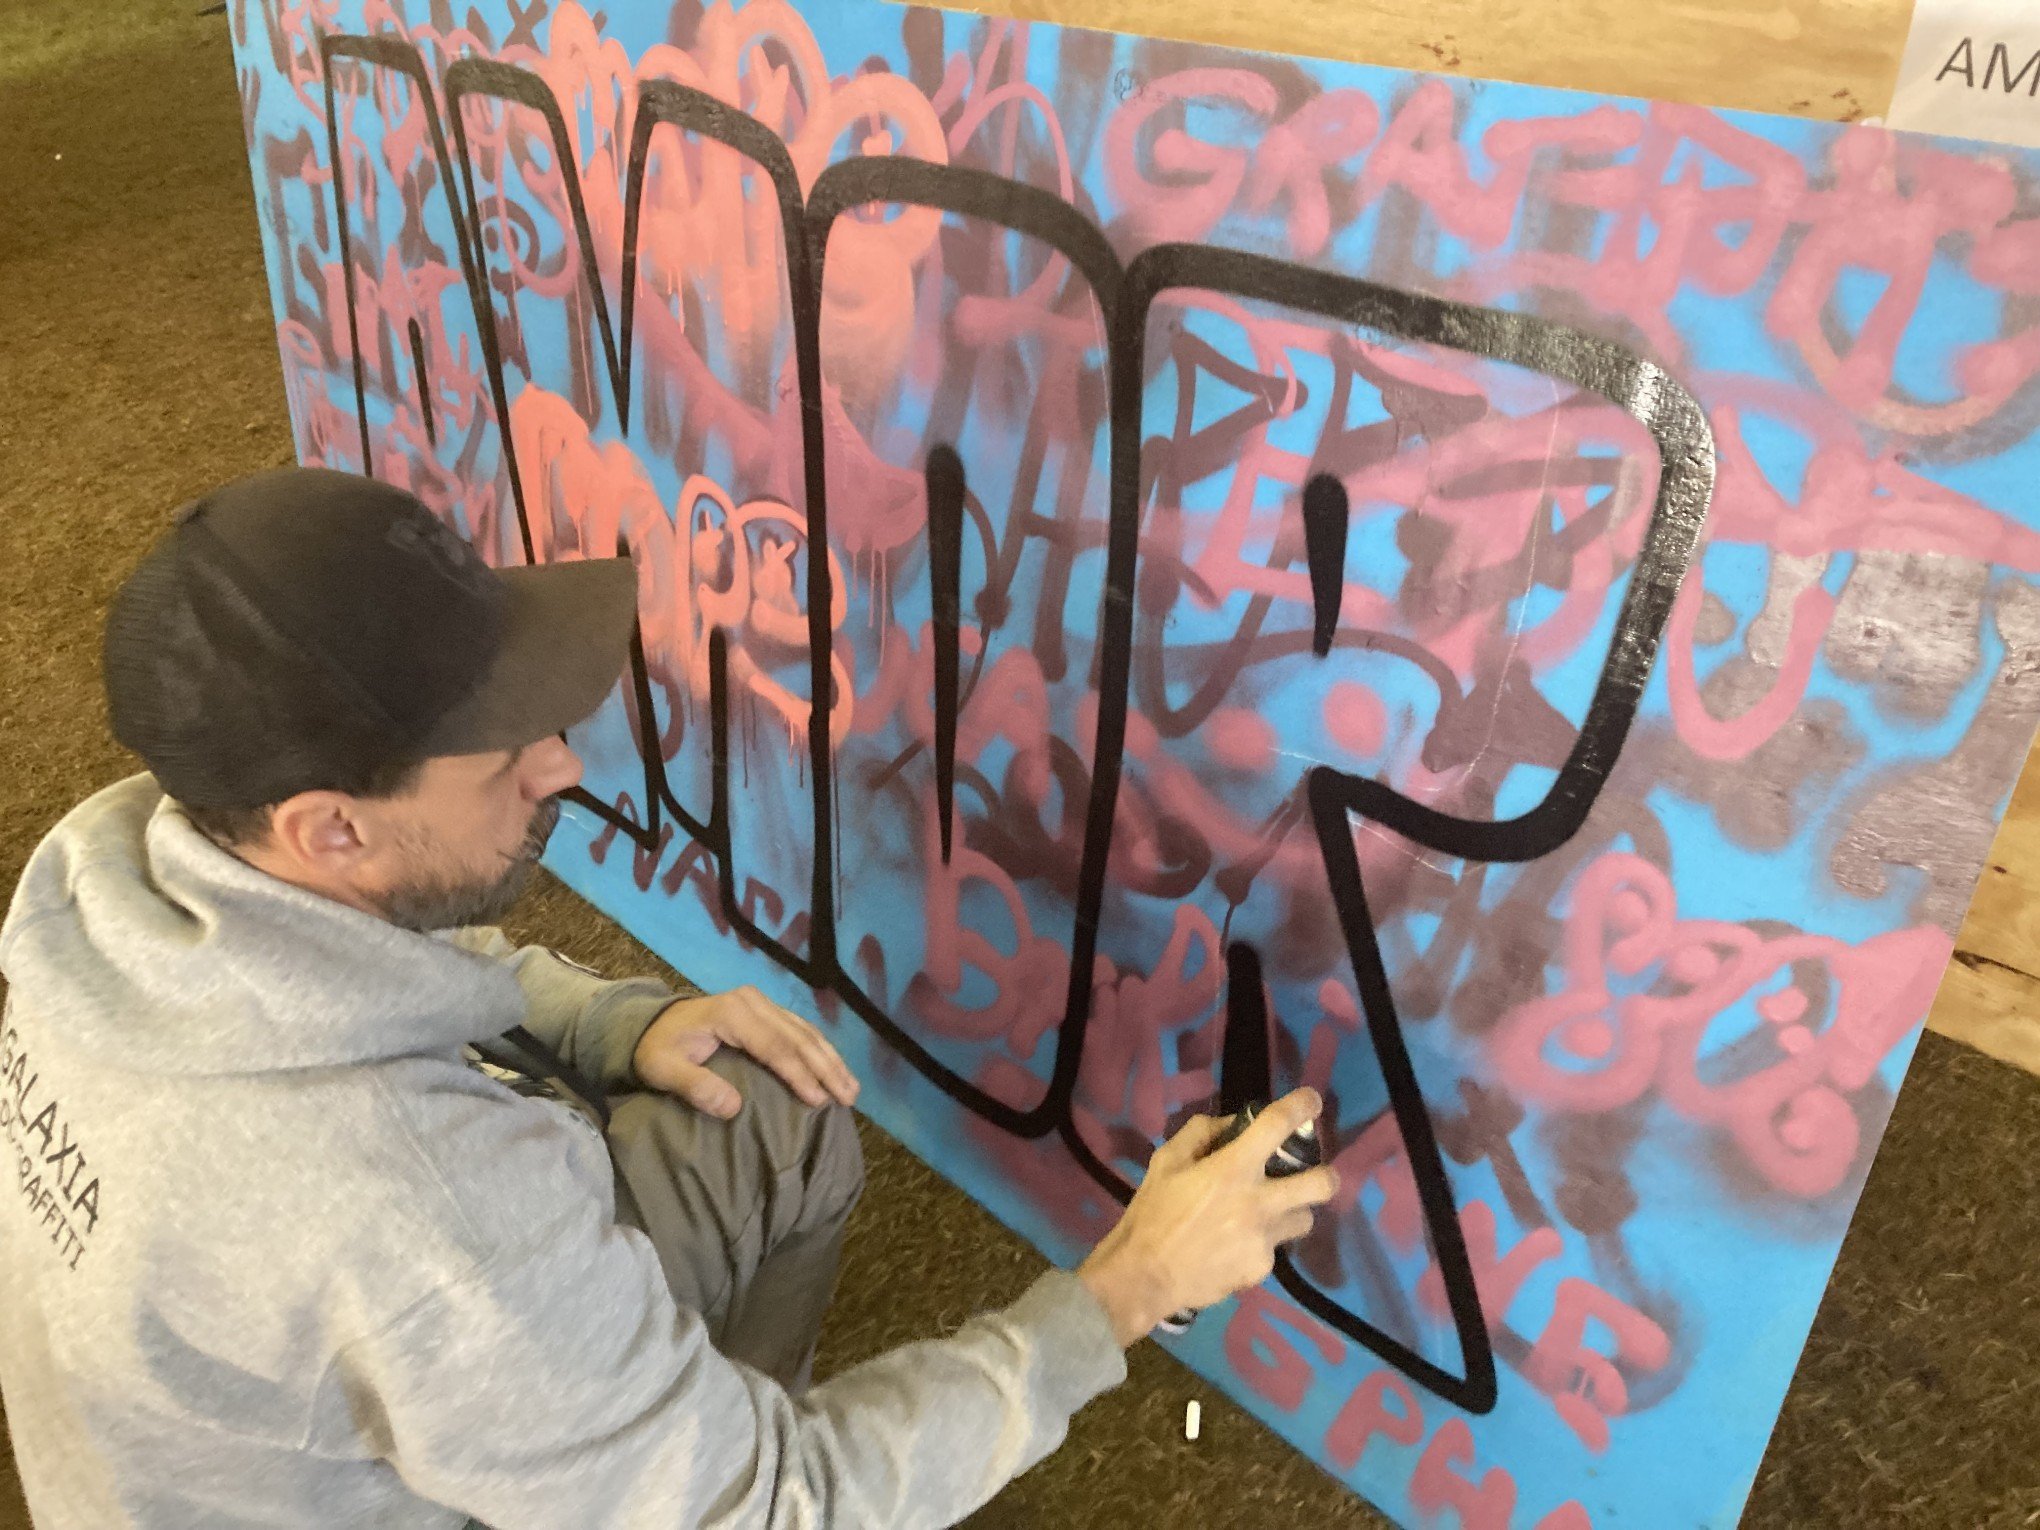 Oficina de grafite é atração na programação da 24ª Karfoffelfest